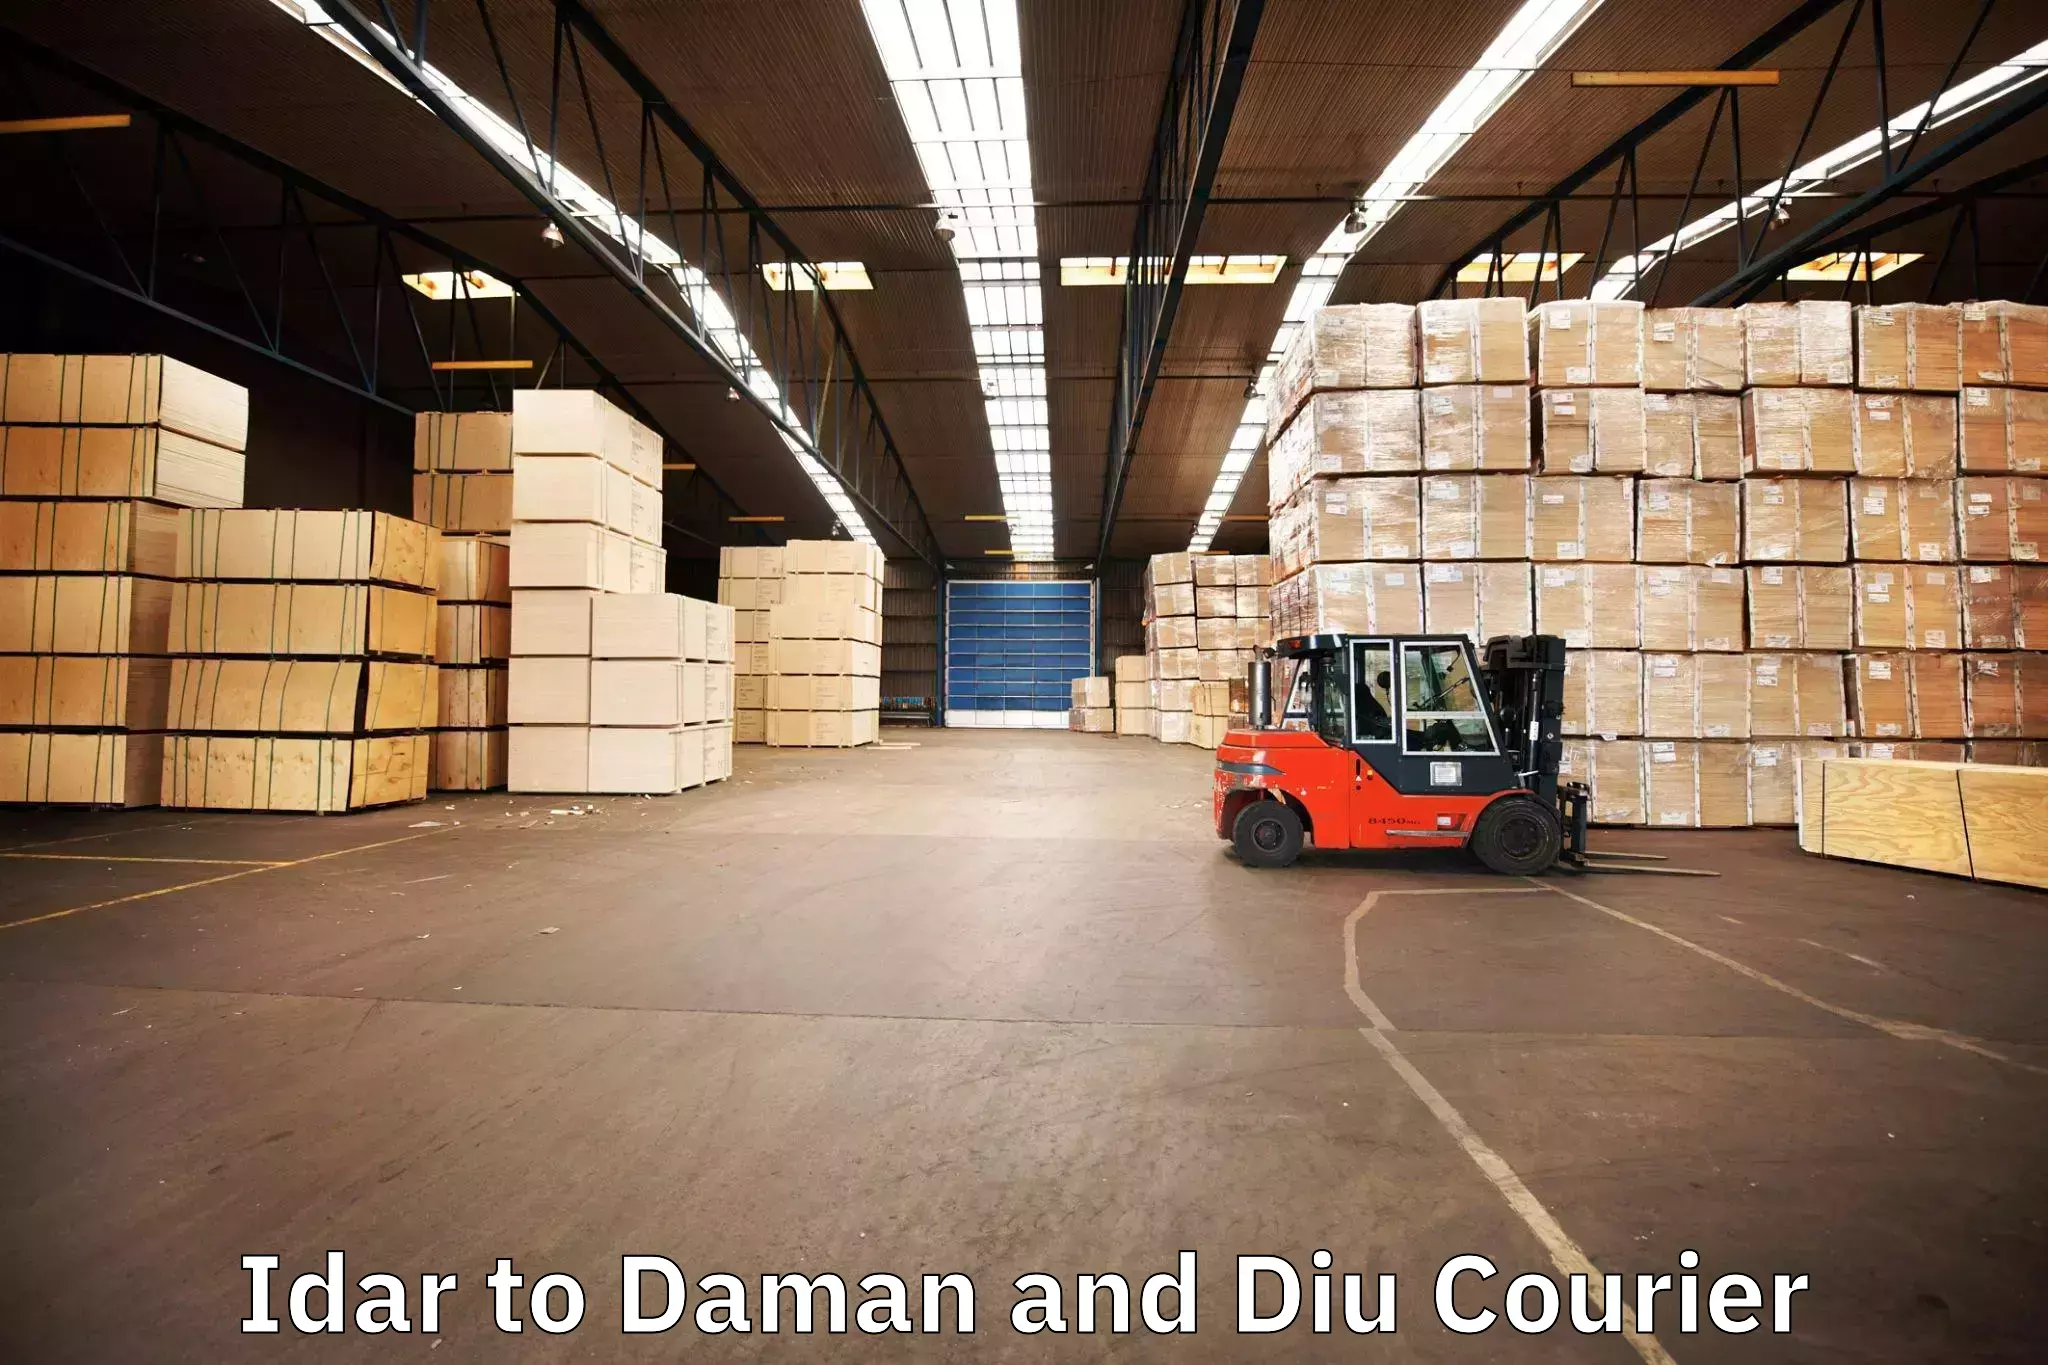 Furniture transport services in Idar to Diu